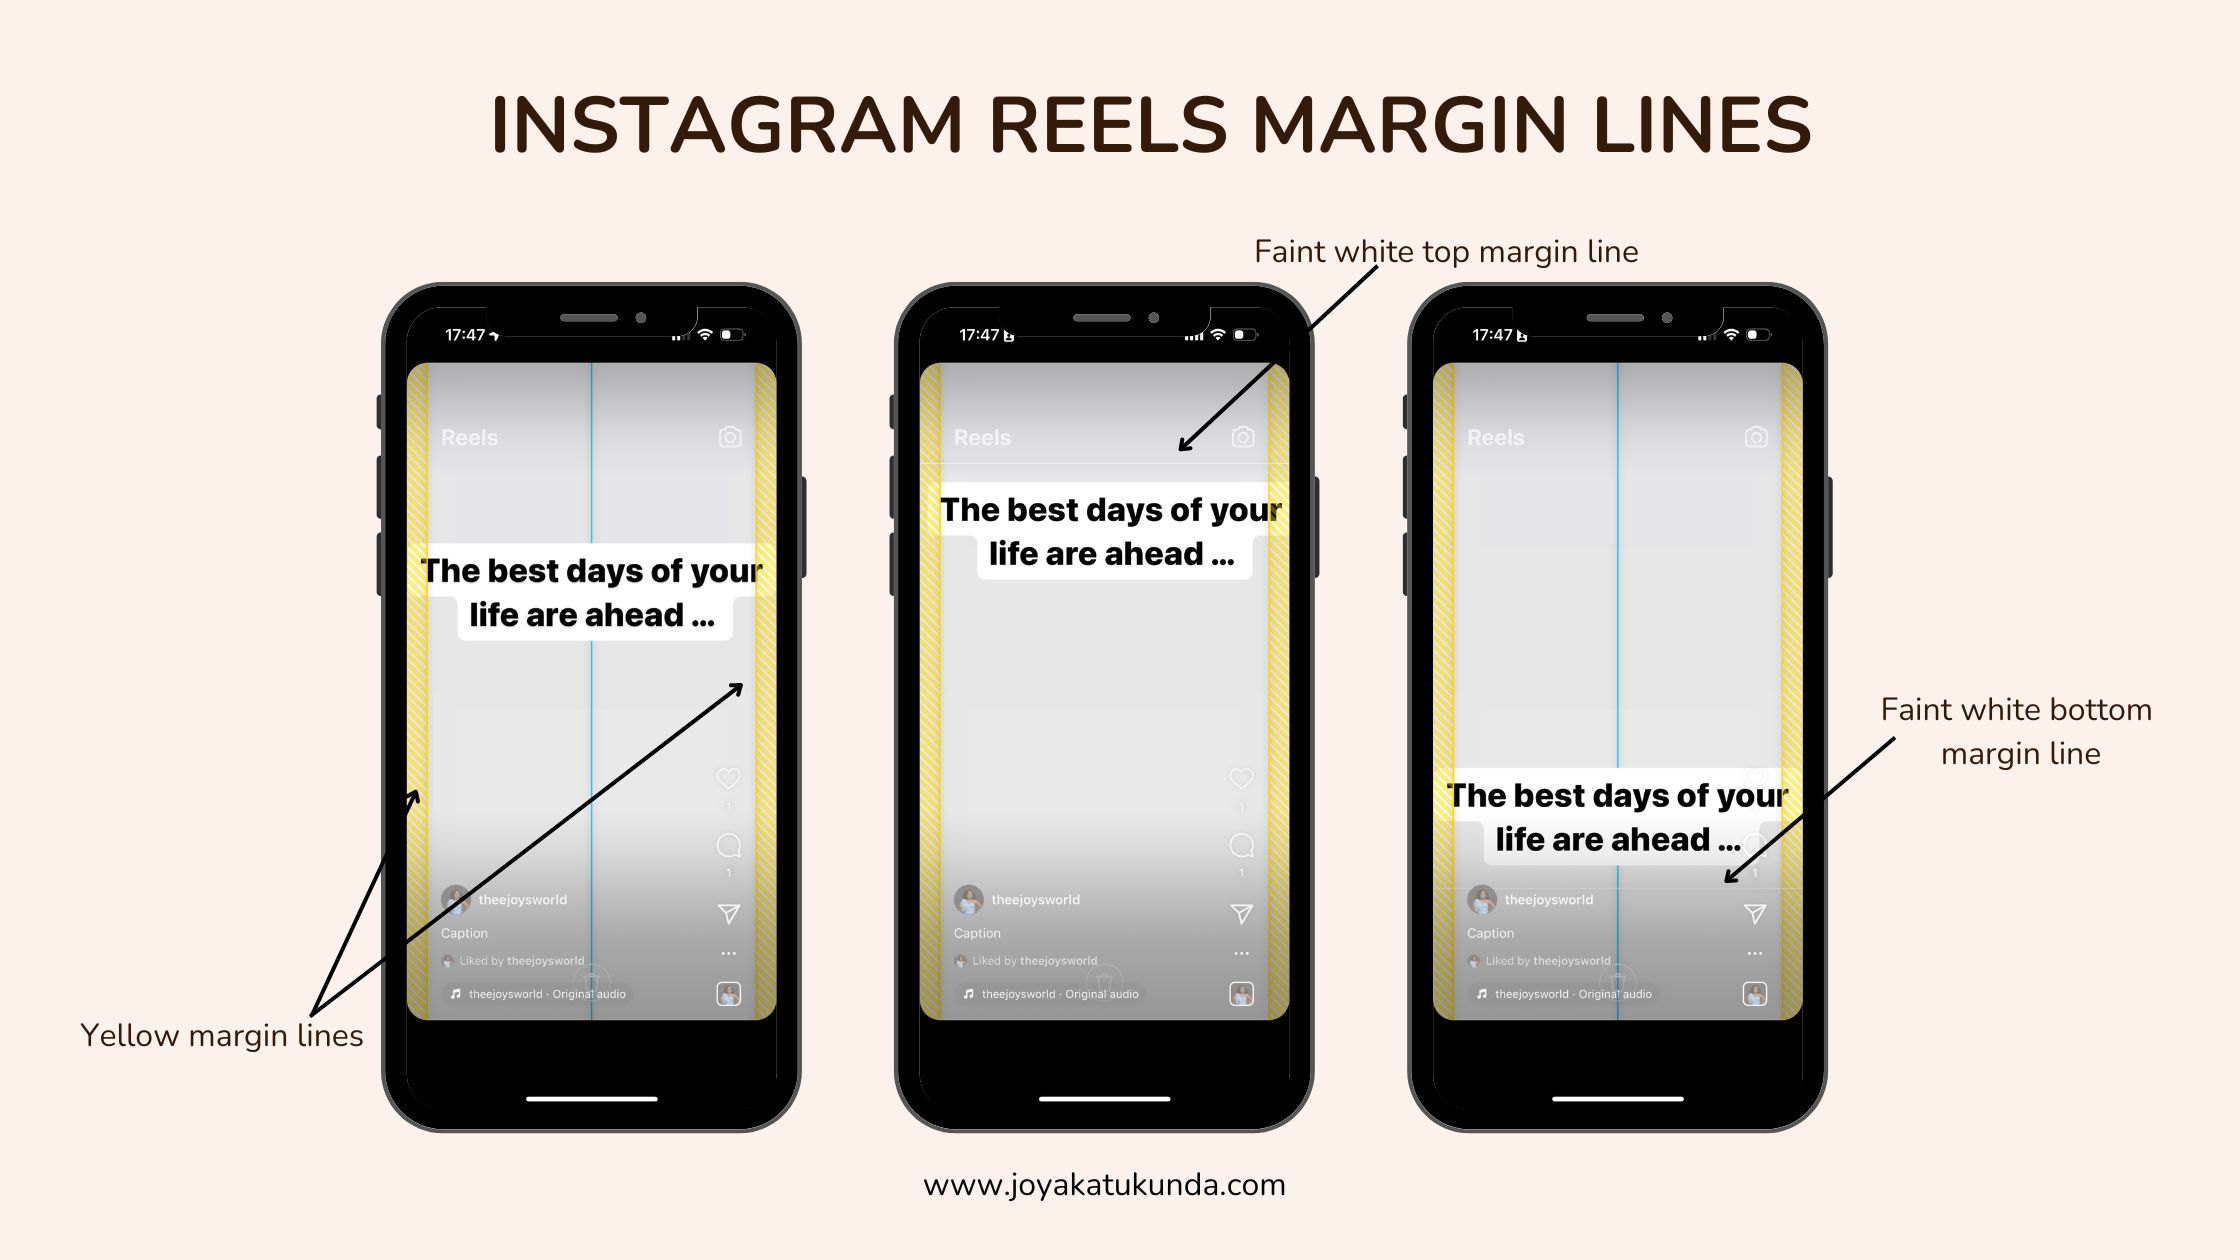 Instagram reels dimensions 